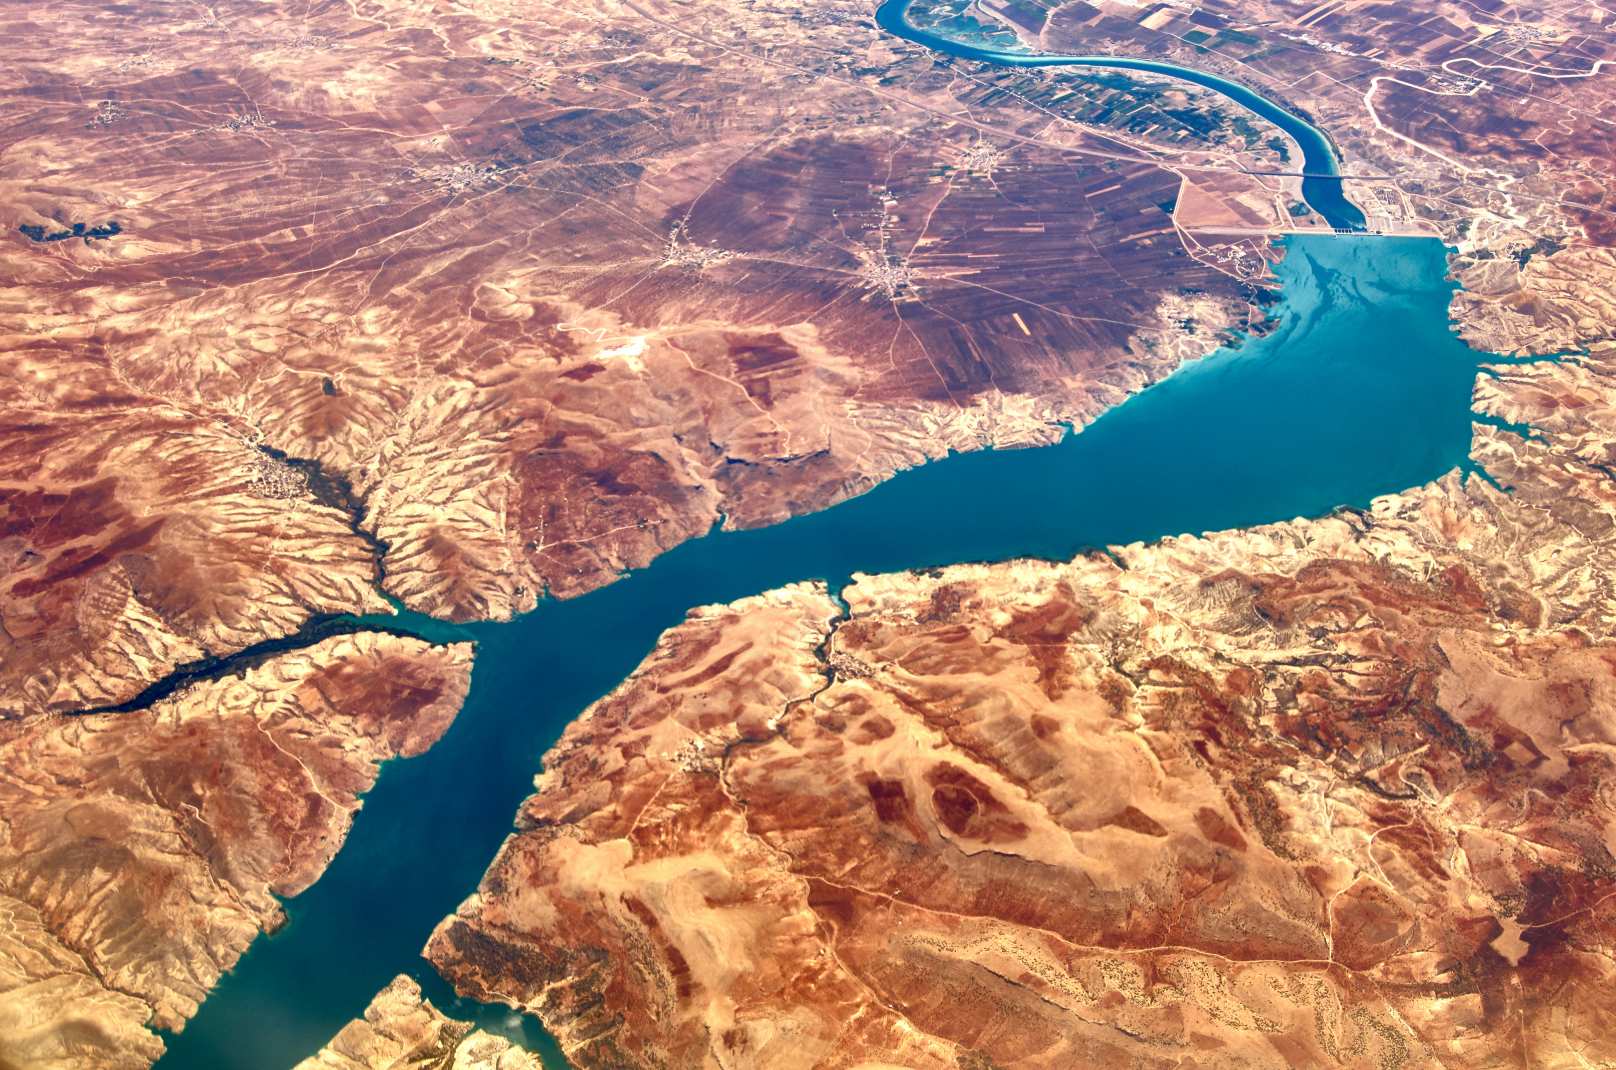 Річка Євфрат висохла, щоб відкрити таємниці давнини та неминучої катастрофи 4